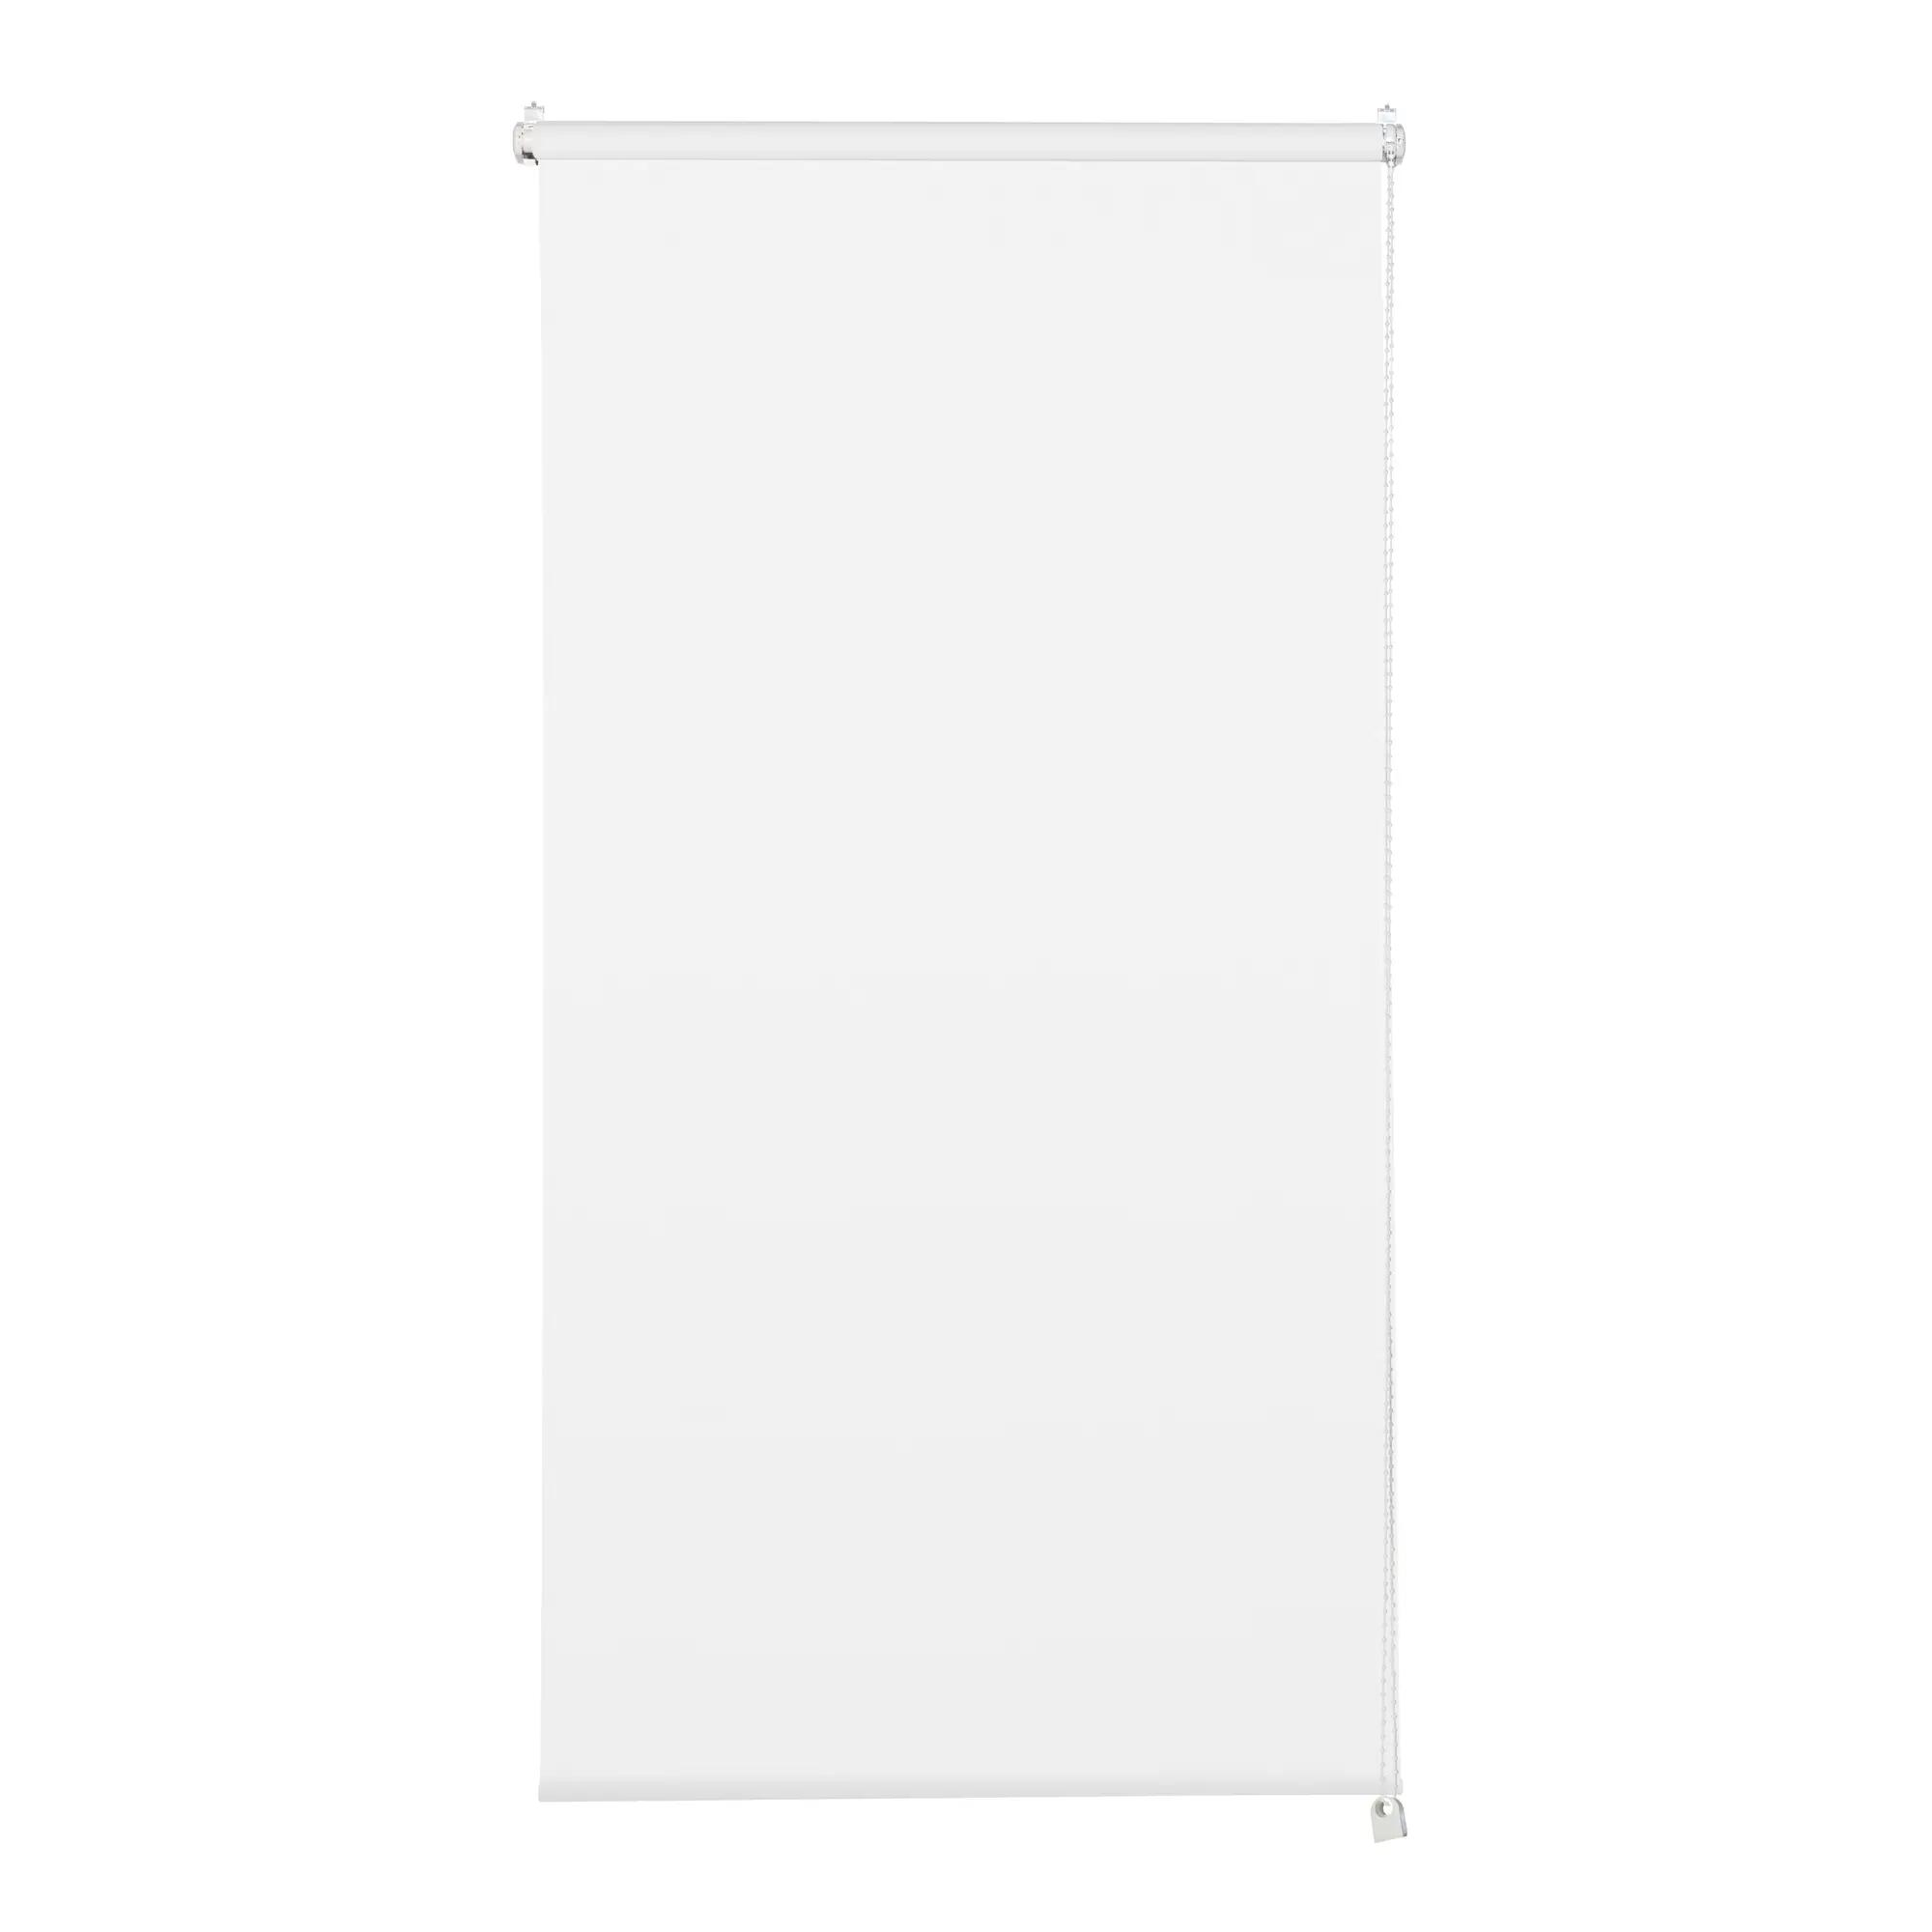 Tenda a rullo filtrante INSPIRE Screen bianca 75 x 250 cm - 2